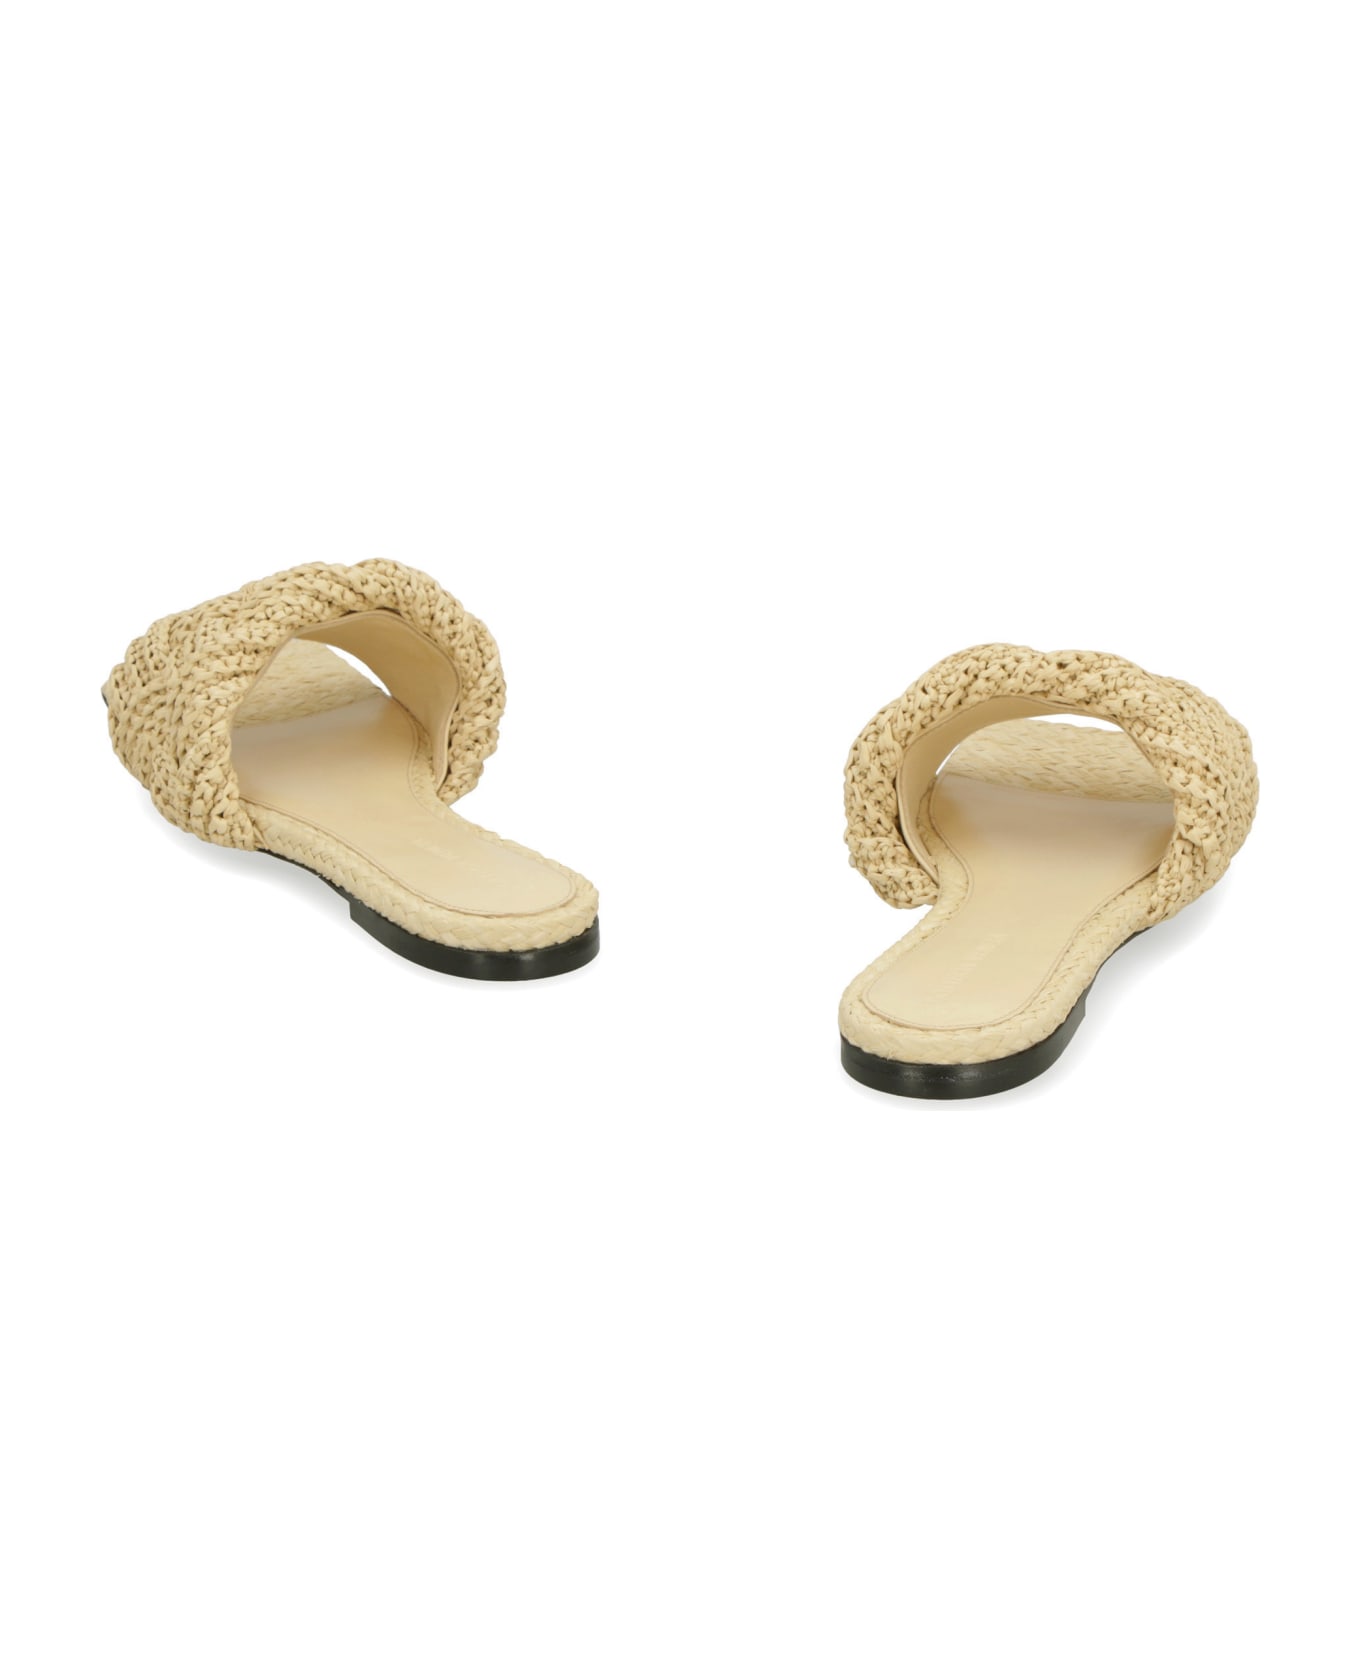 Bottega Veneta Lido Flat Sandals - Beige